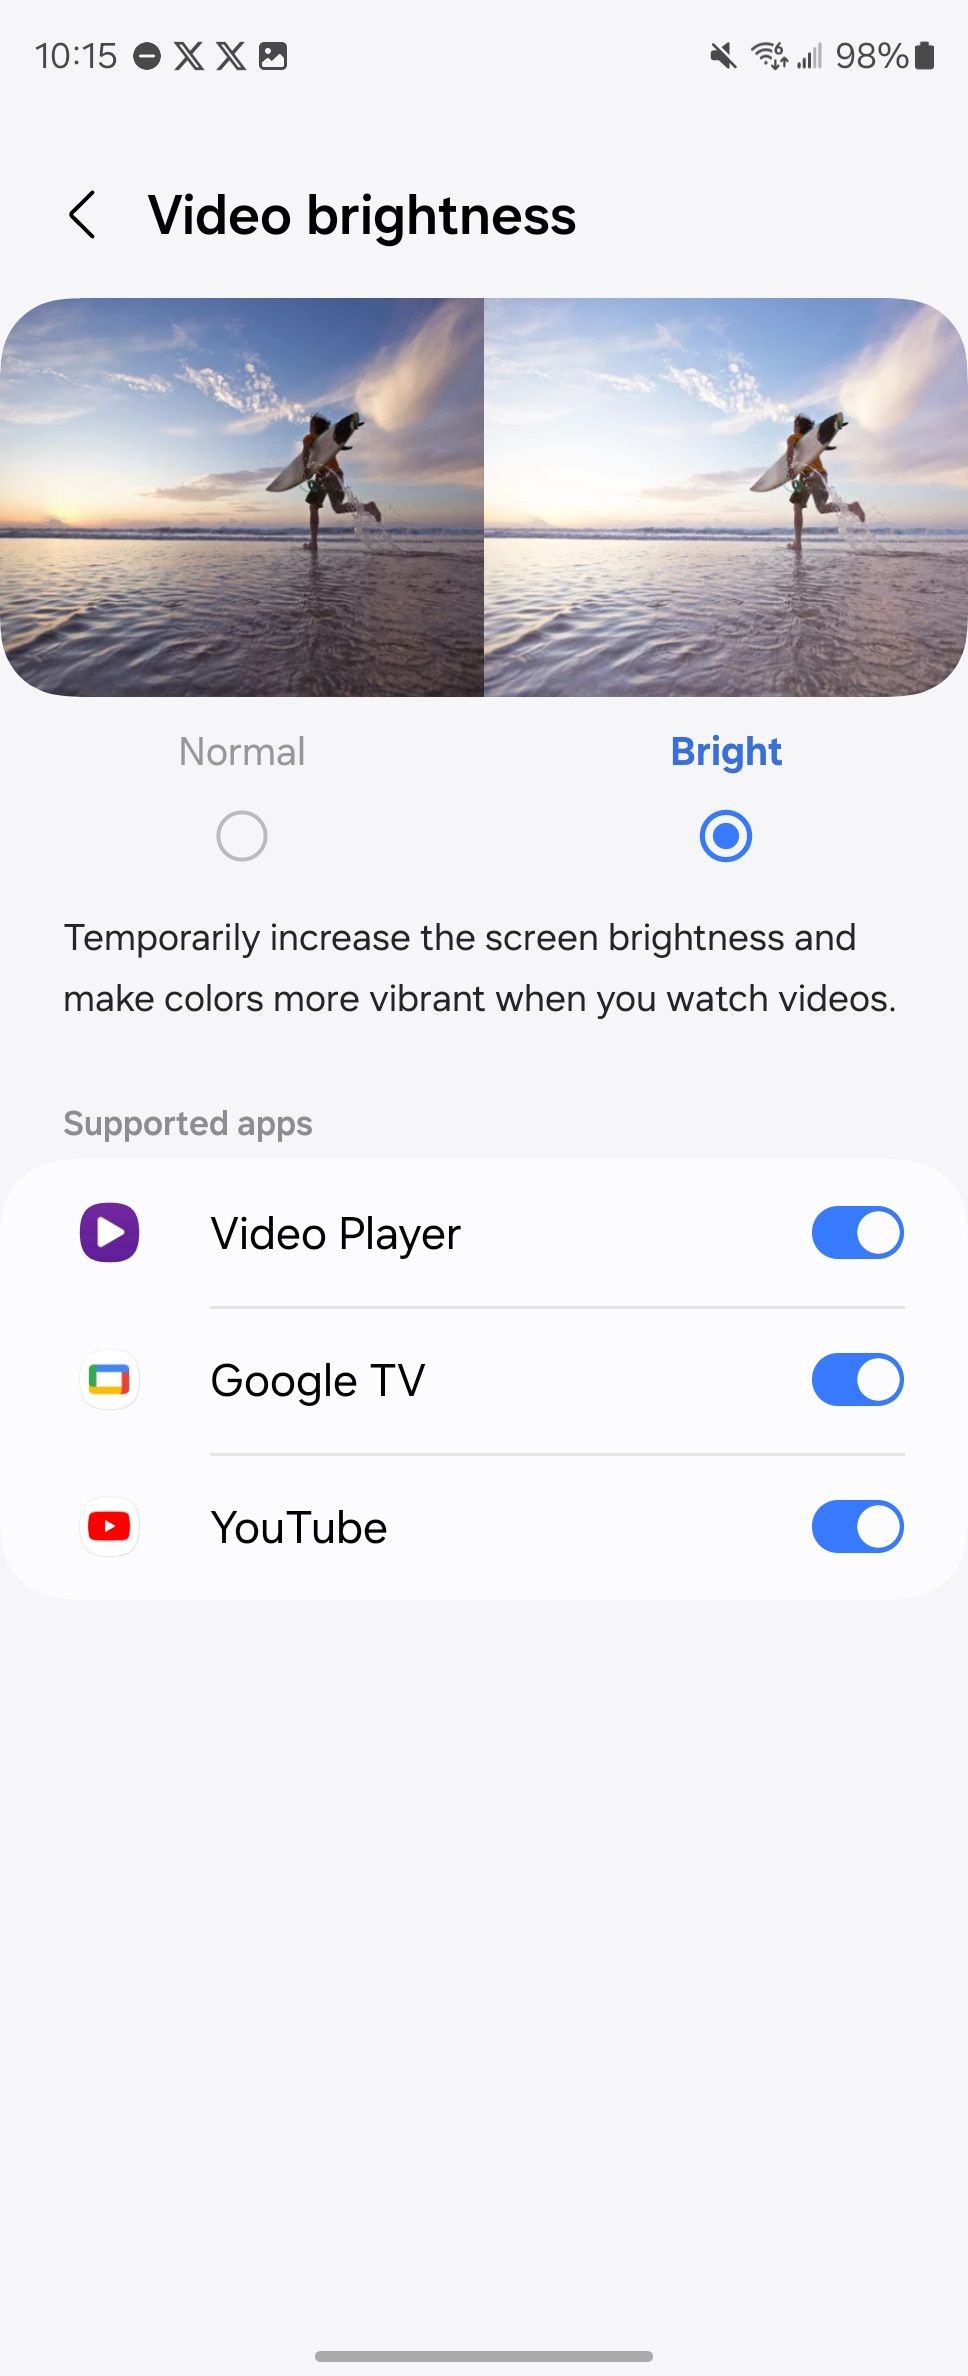 Opção brilhante selecionada mostrando uma lista de aplicativos suportados com alternâncias nas configurações de brilho do vídeo